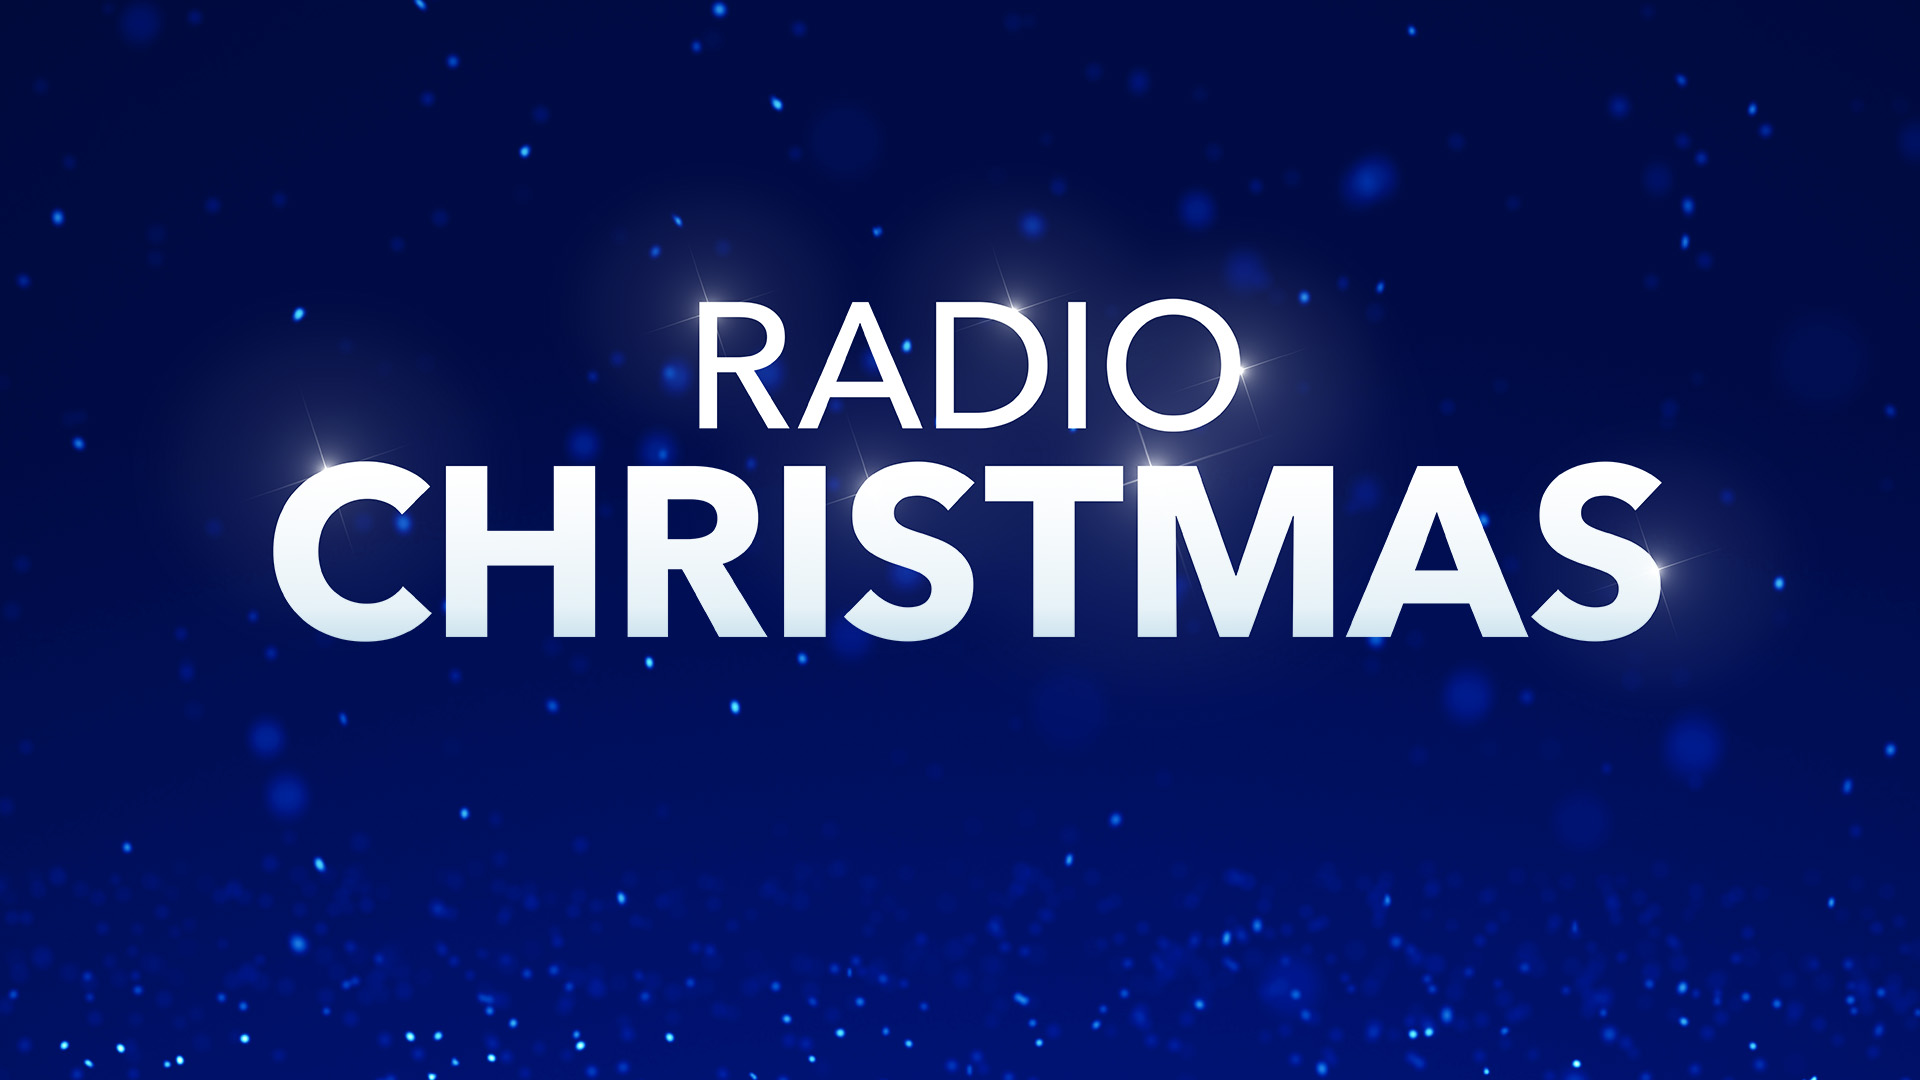 About Radio Christmas Lifetime